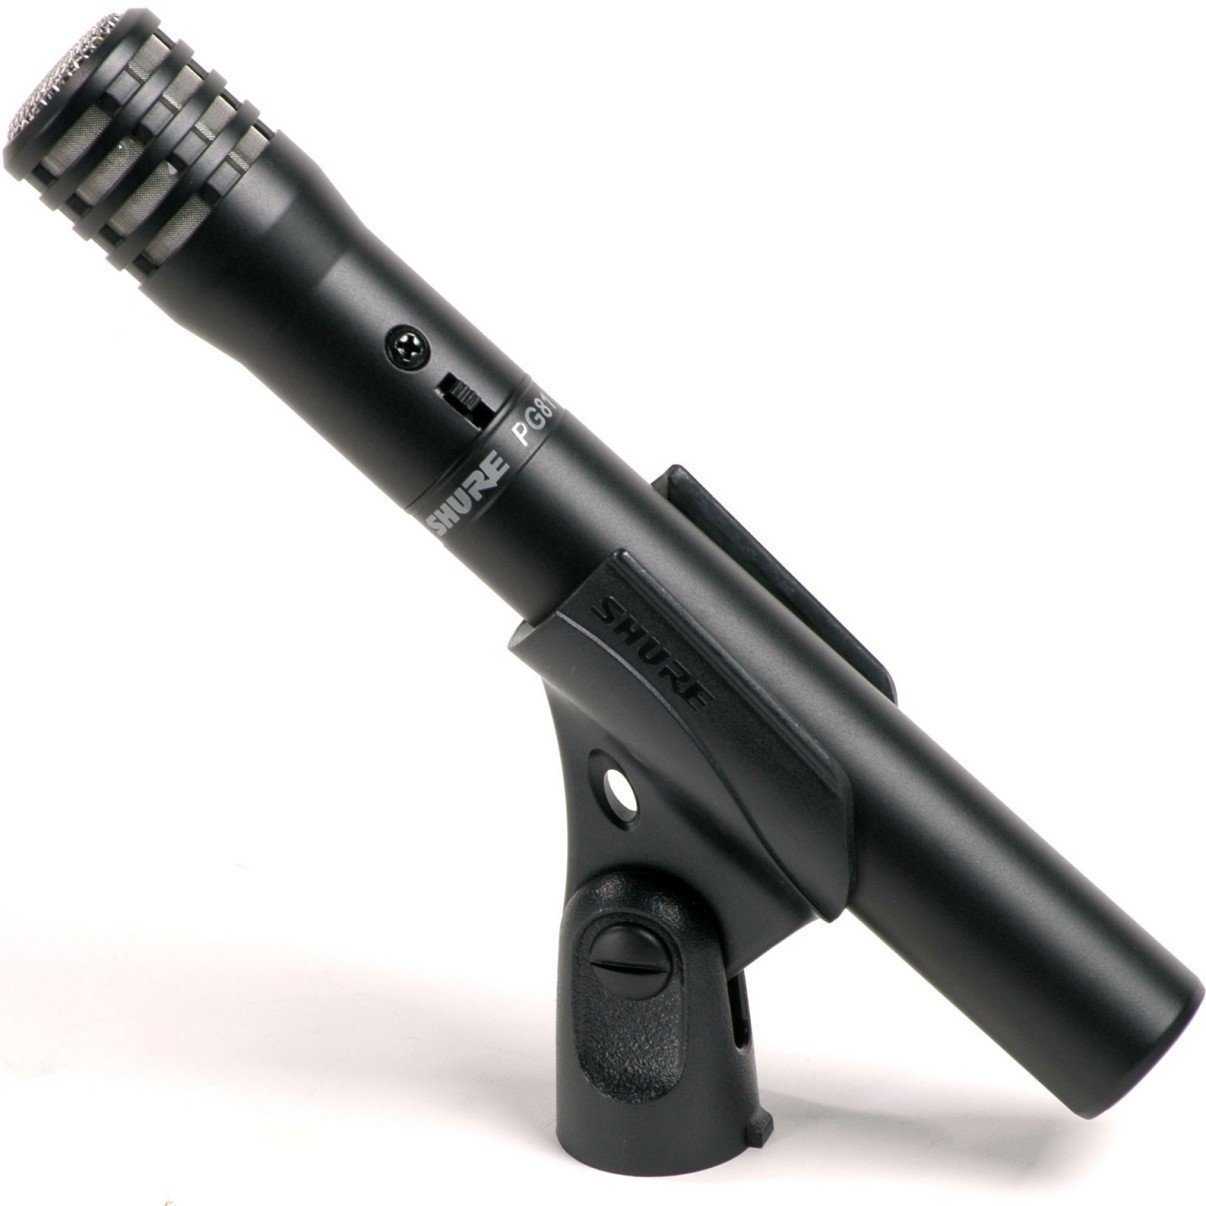 Microfone condensador para instrumentos Shure PG81-XLR